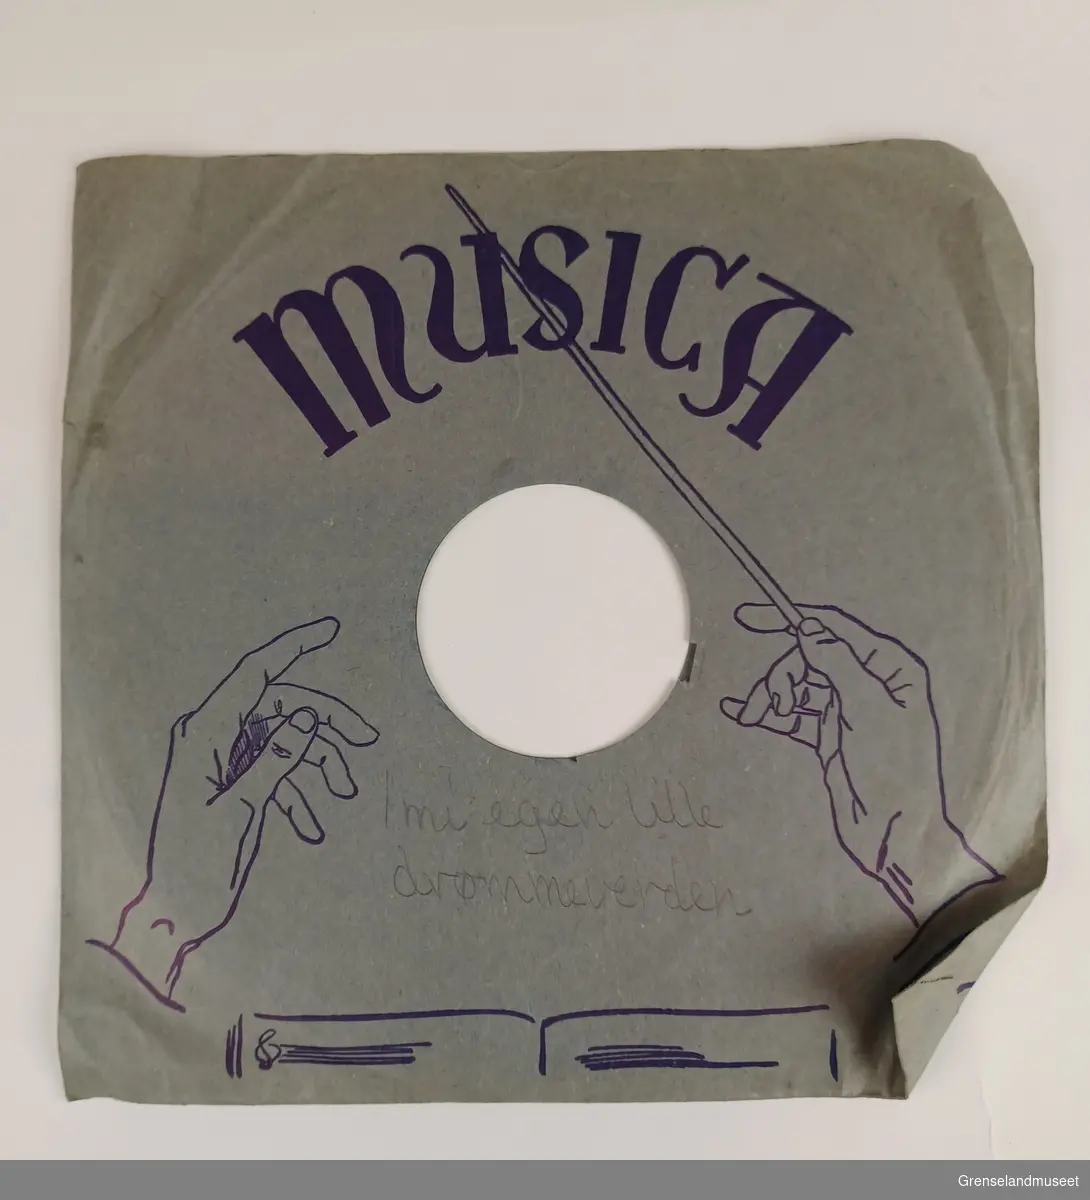 Plate: Magic Notes logoen som er en note.
Innpakning cover: motivet er "MusicA" med orkester, dansende par og en kvinne som lytter til musikken. 